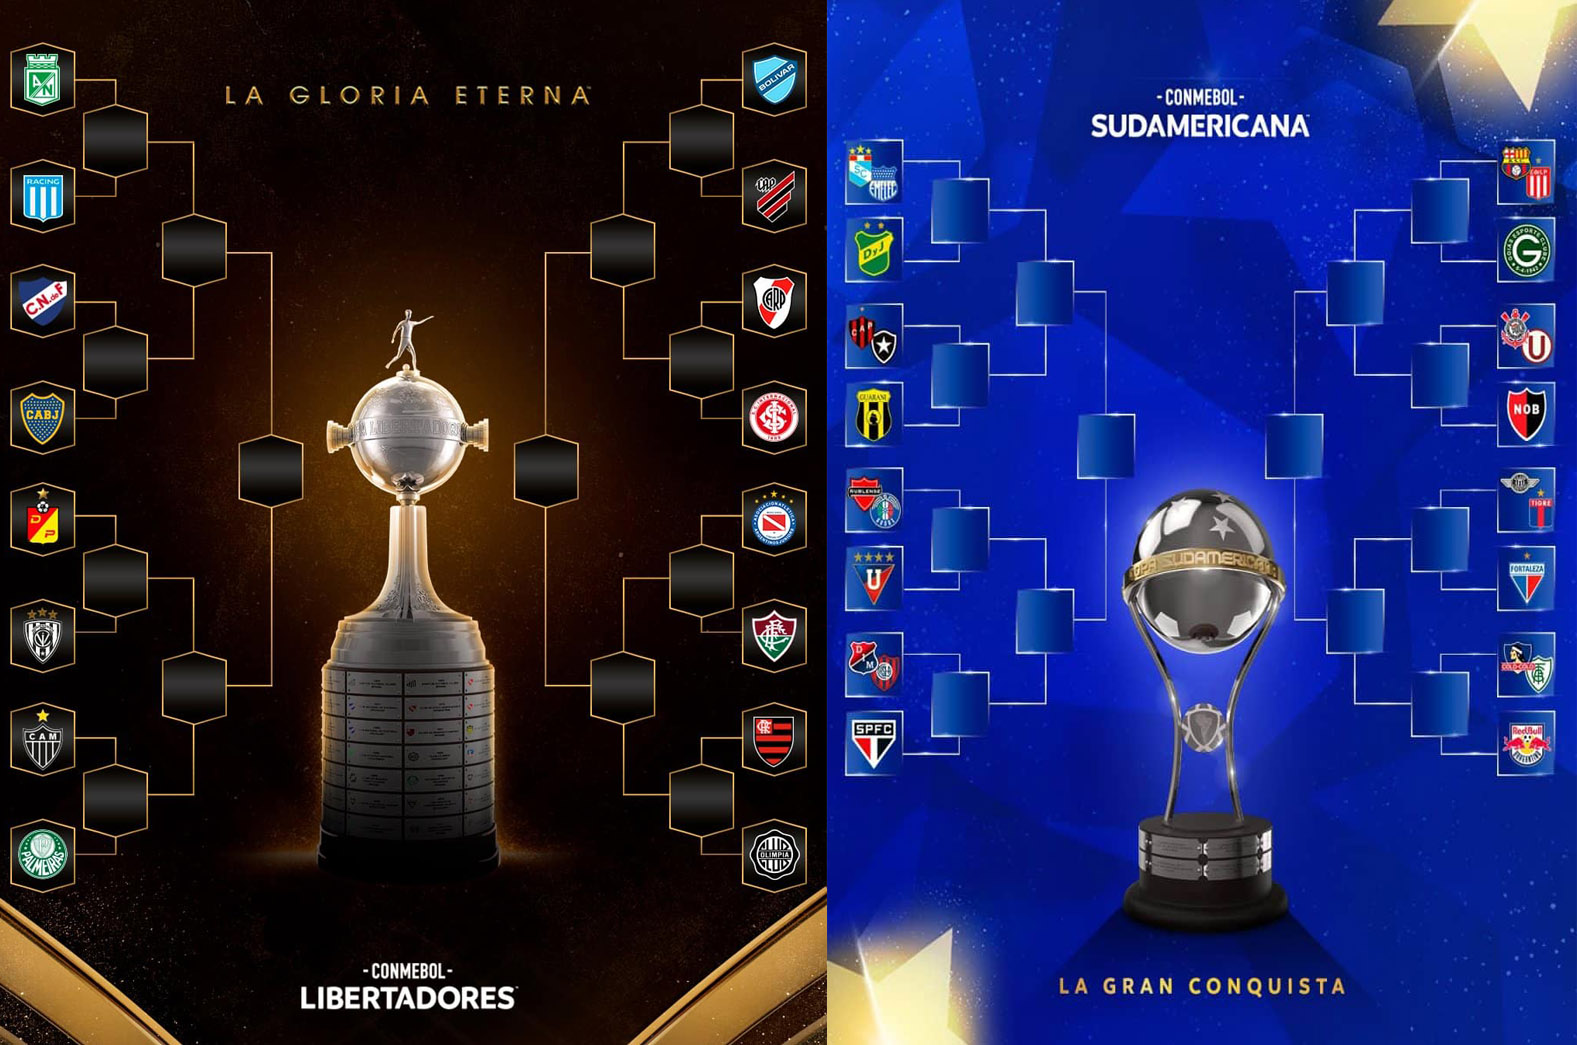 Sorteio do Mundial de Clubes 2023: campeão da Libertadores pode